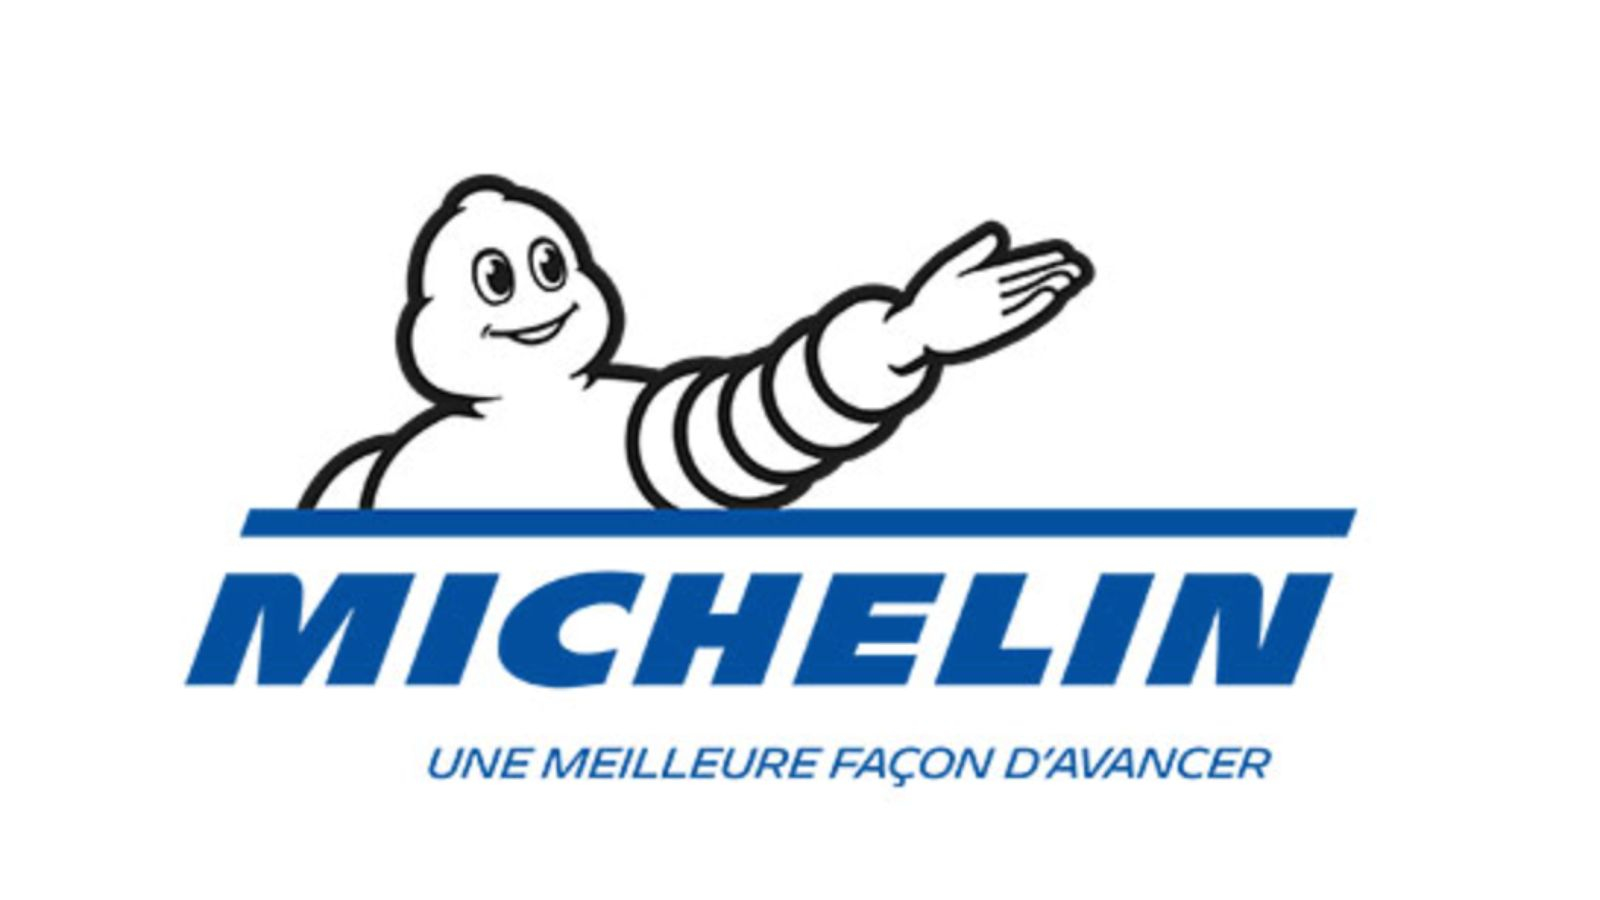 La saga publicitaire de Michelin